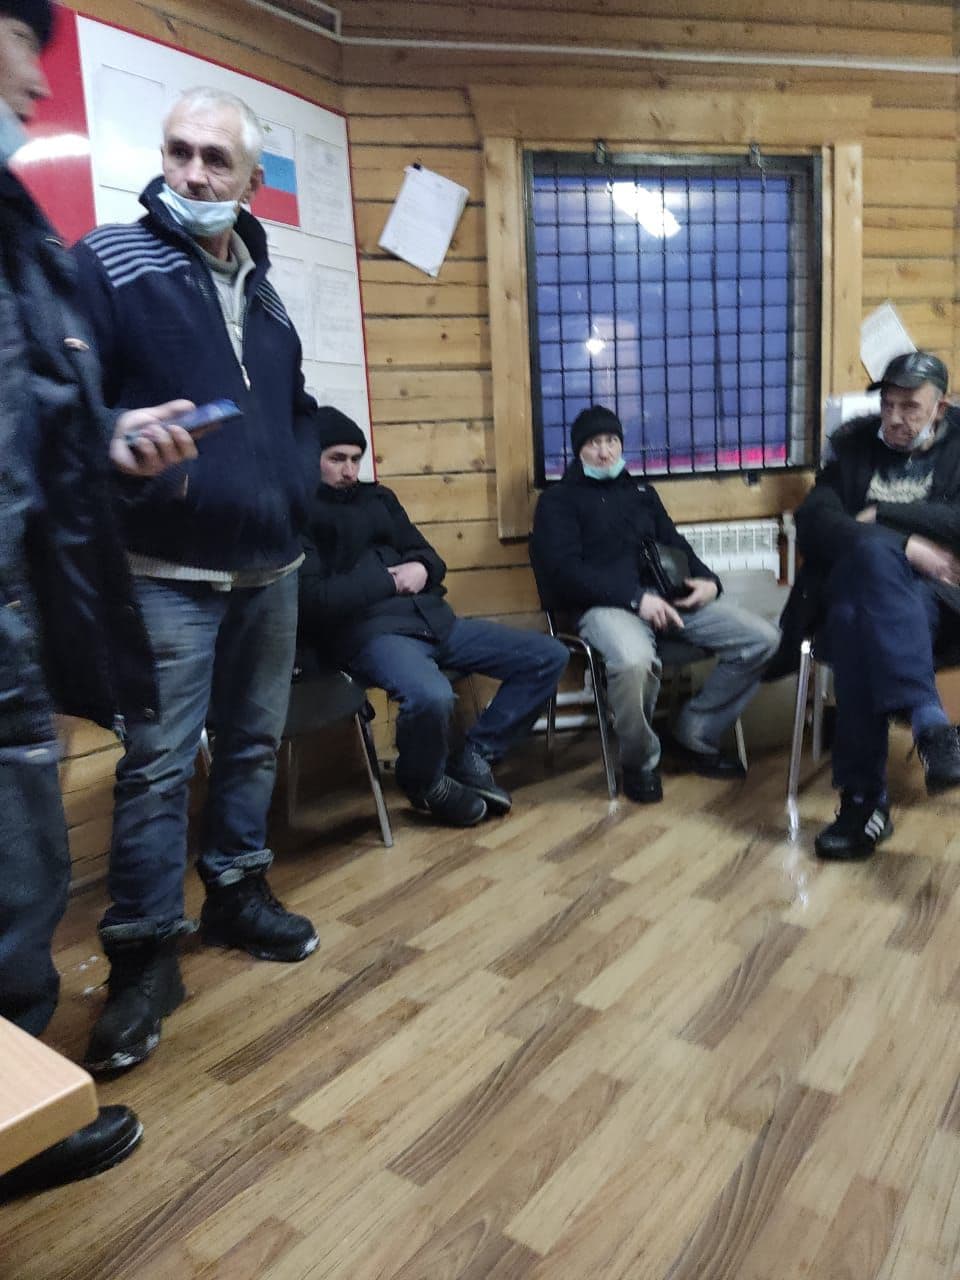 "Проезжающие спрашивали только о дороге на ледовую переправу". В Якутии полиция проверила информацию о попытке увезти мальчика